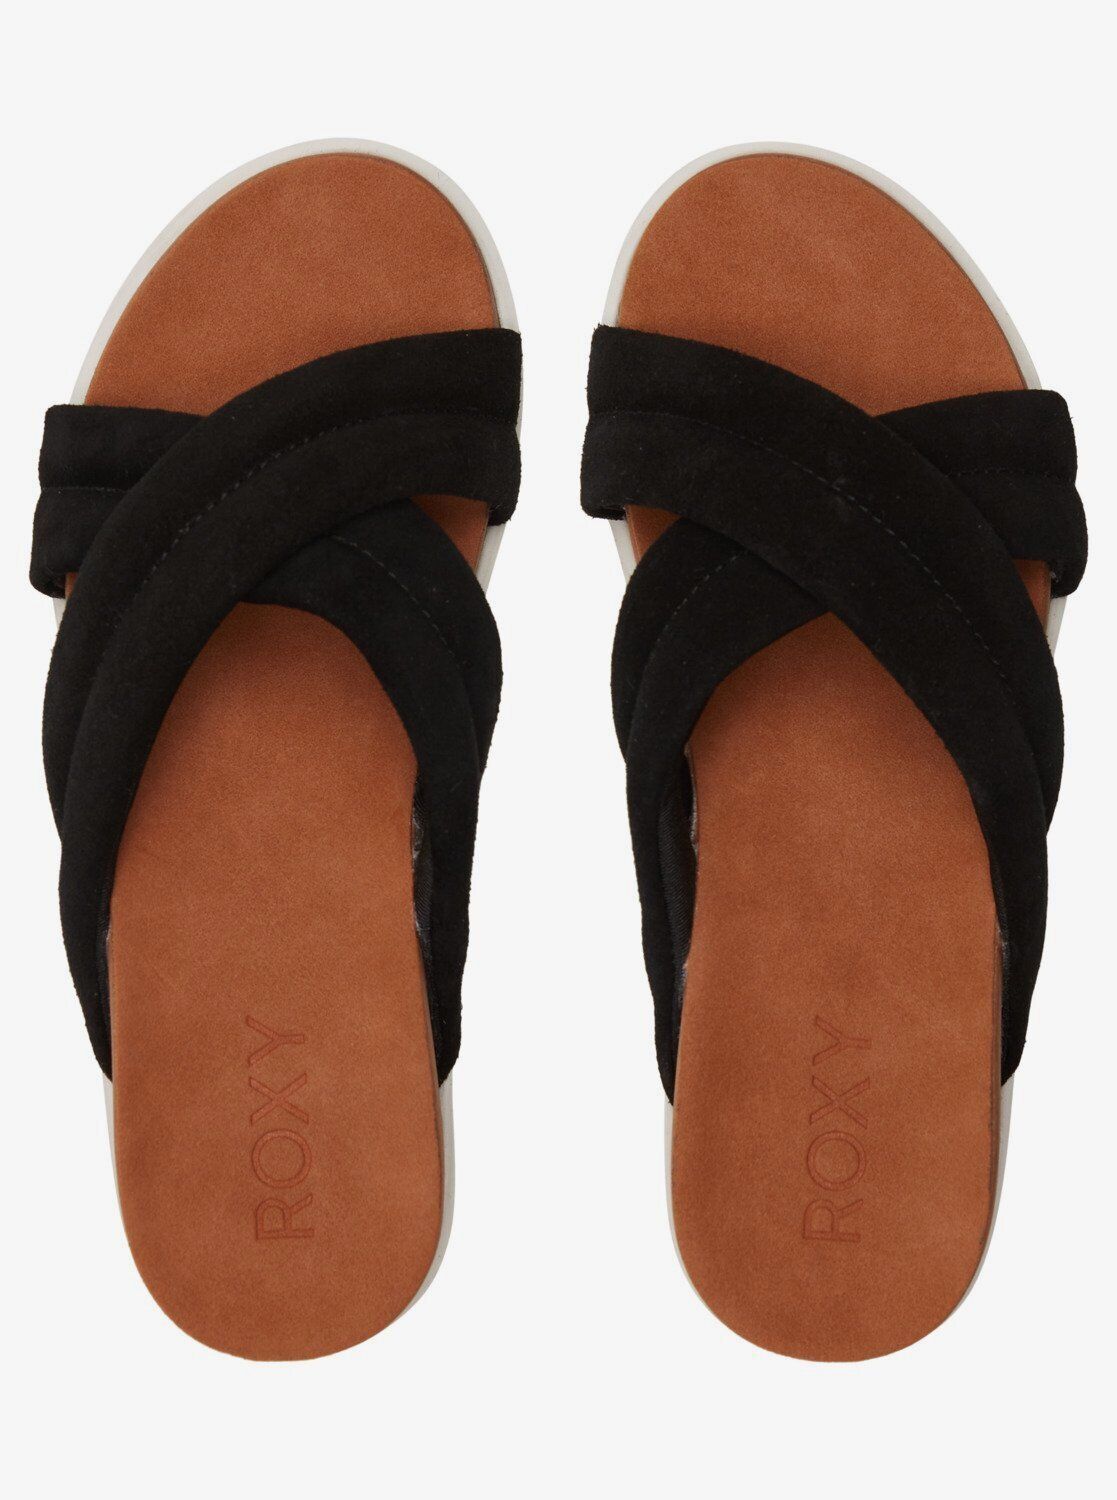 Roxy Veria Black Platform Soft Suede Leather Lightweight Slip On Sandals